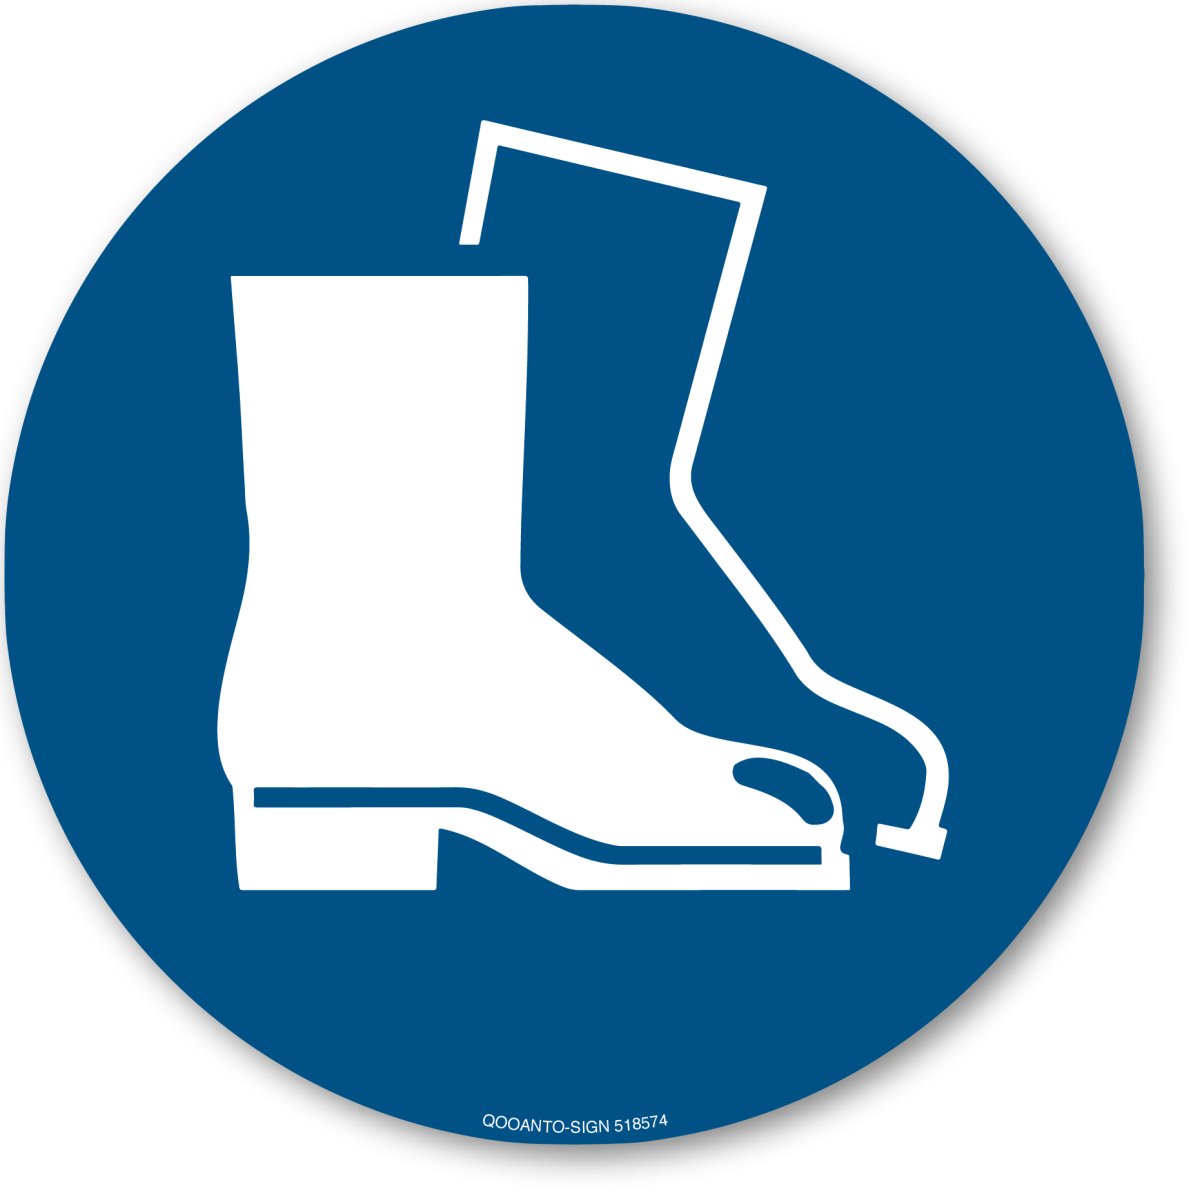 Fußschutz Benutzen, EN ISO 7010, M008 Gebotsschild oder Aufkleber aus Alu-Verbund oder Selbstklebefolie mit UV-Schutz - QOOANTO-SIGN